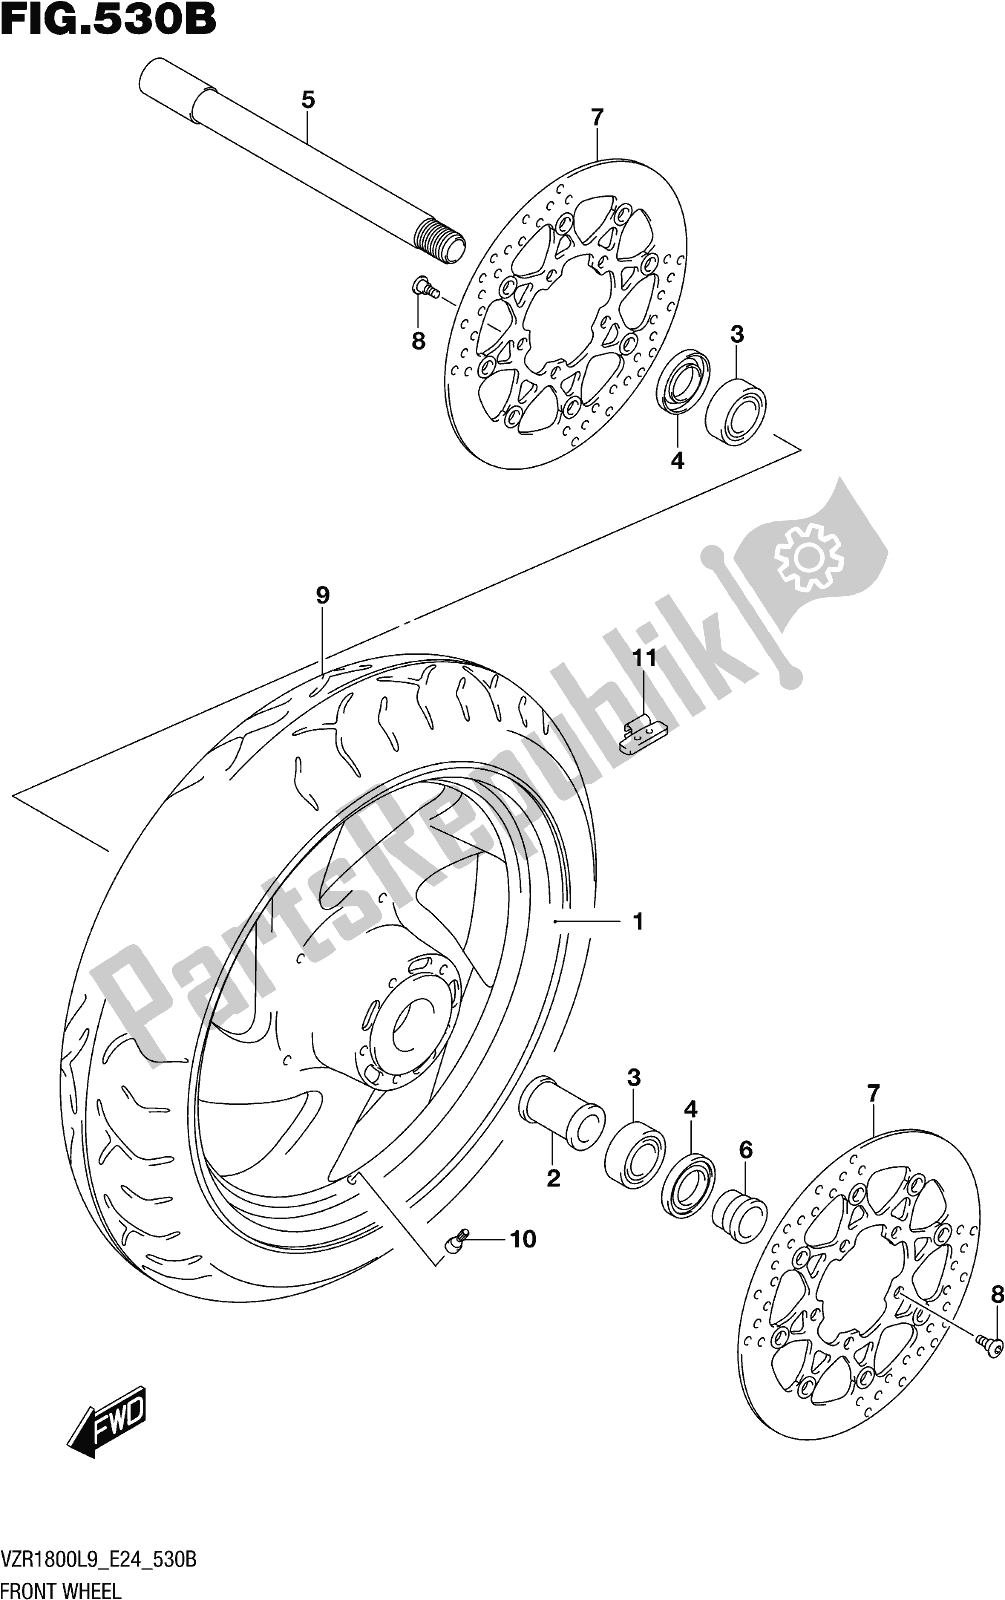 Toutes les pièces pour le Fig. 530b Front Wheel (vzr1800bzl9 E24) du Suzuki VZR 1800 BZ 2019